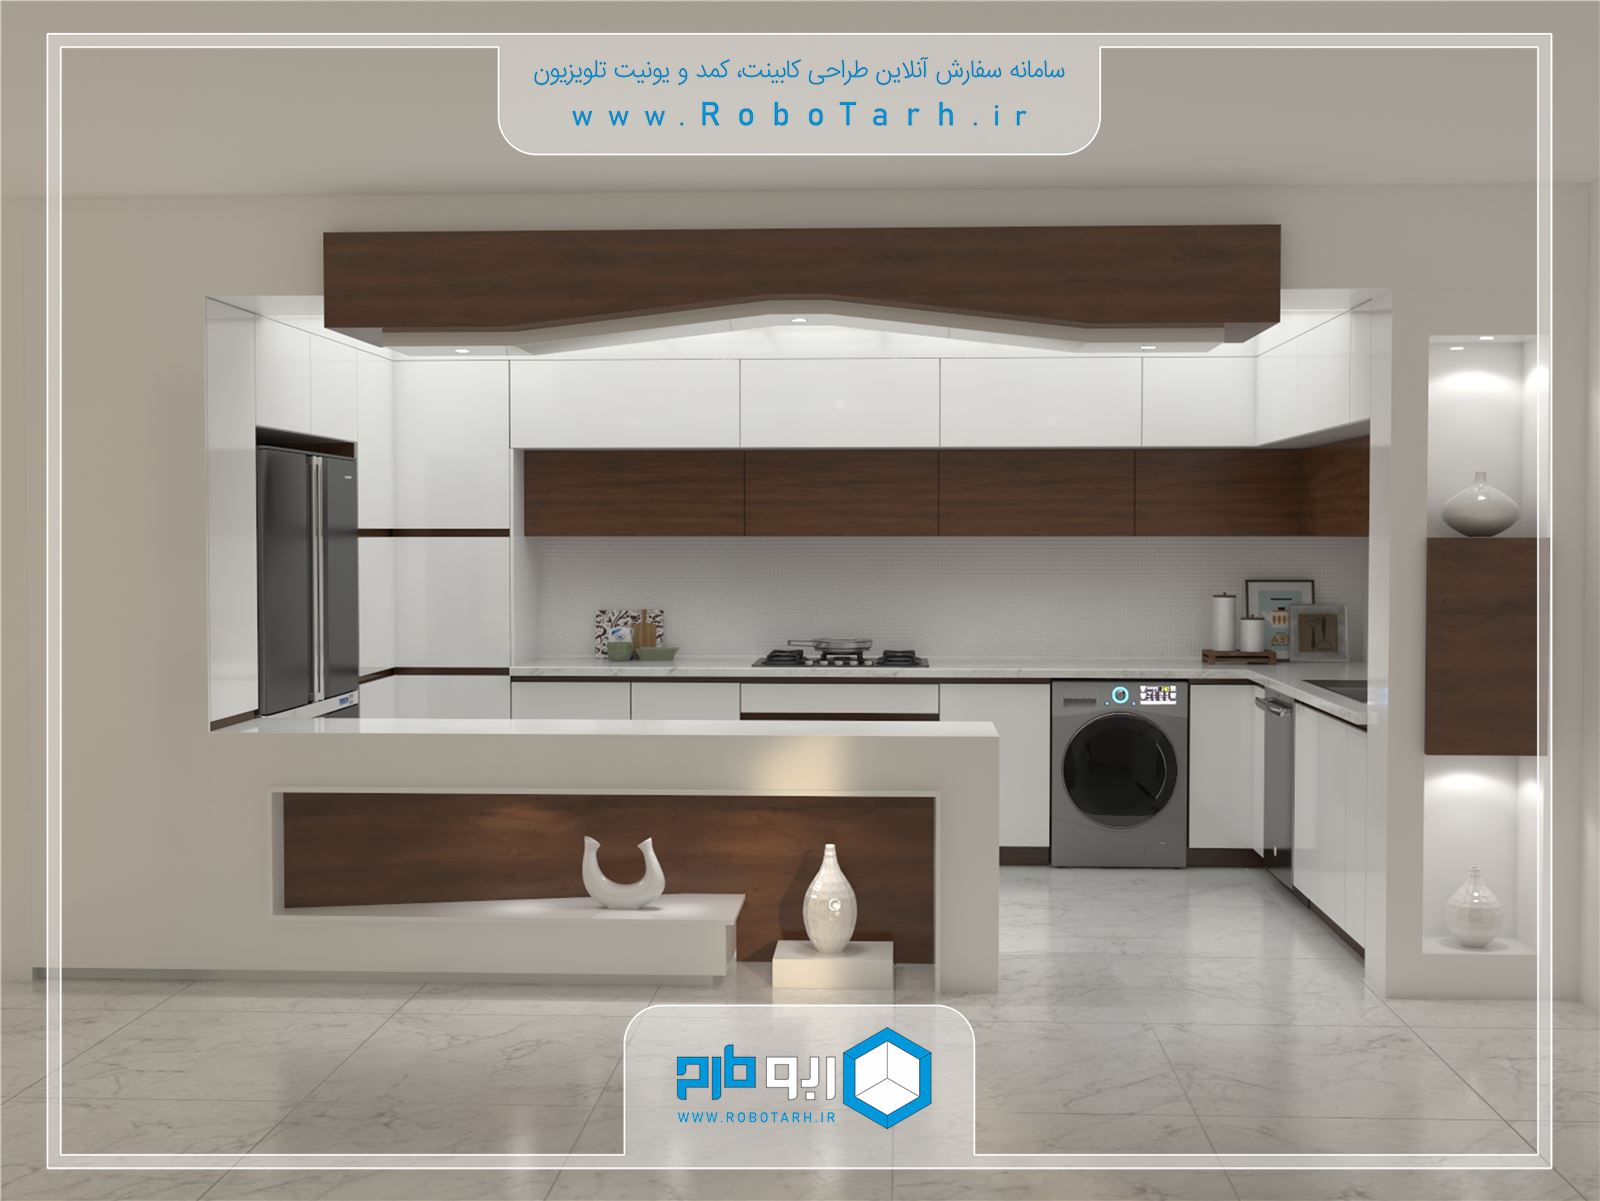 طراحی کابینت آشپزخانه جذاب و مدرن با ترکیب رنگ سفید براق و قهوه ای